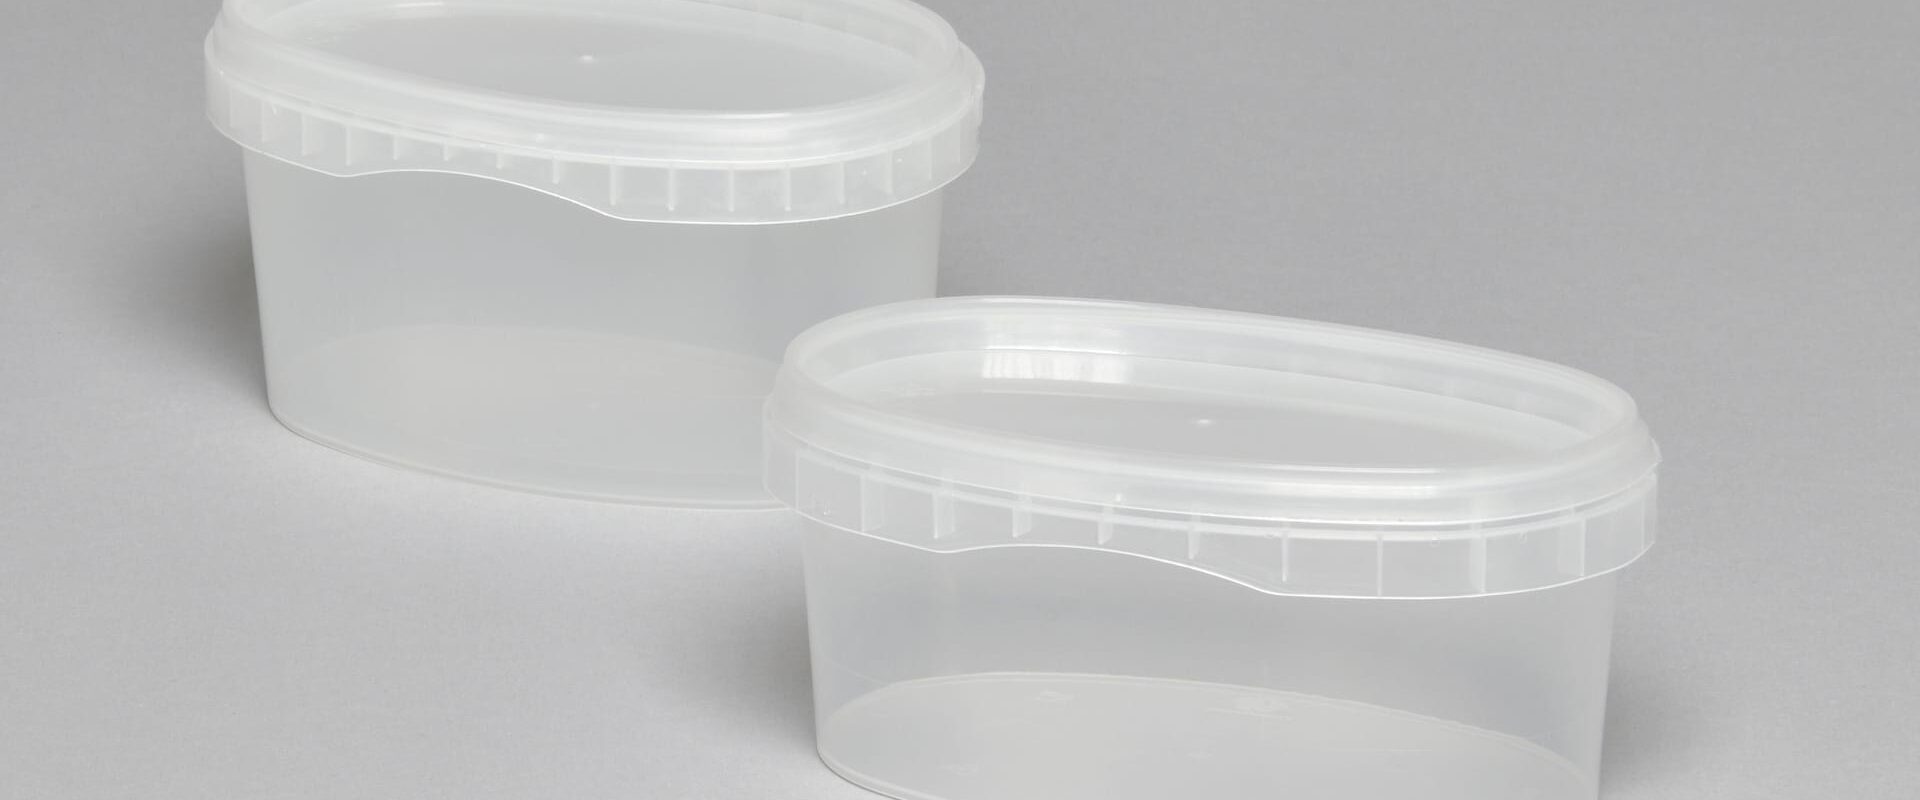 contenitori per alimenti in plastica trasparente e barattoli in plastica con coperchio